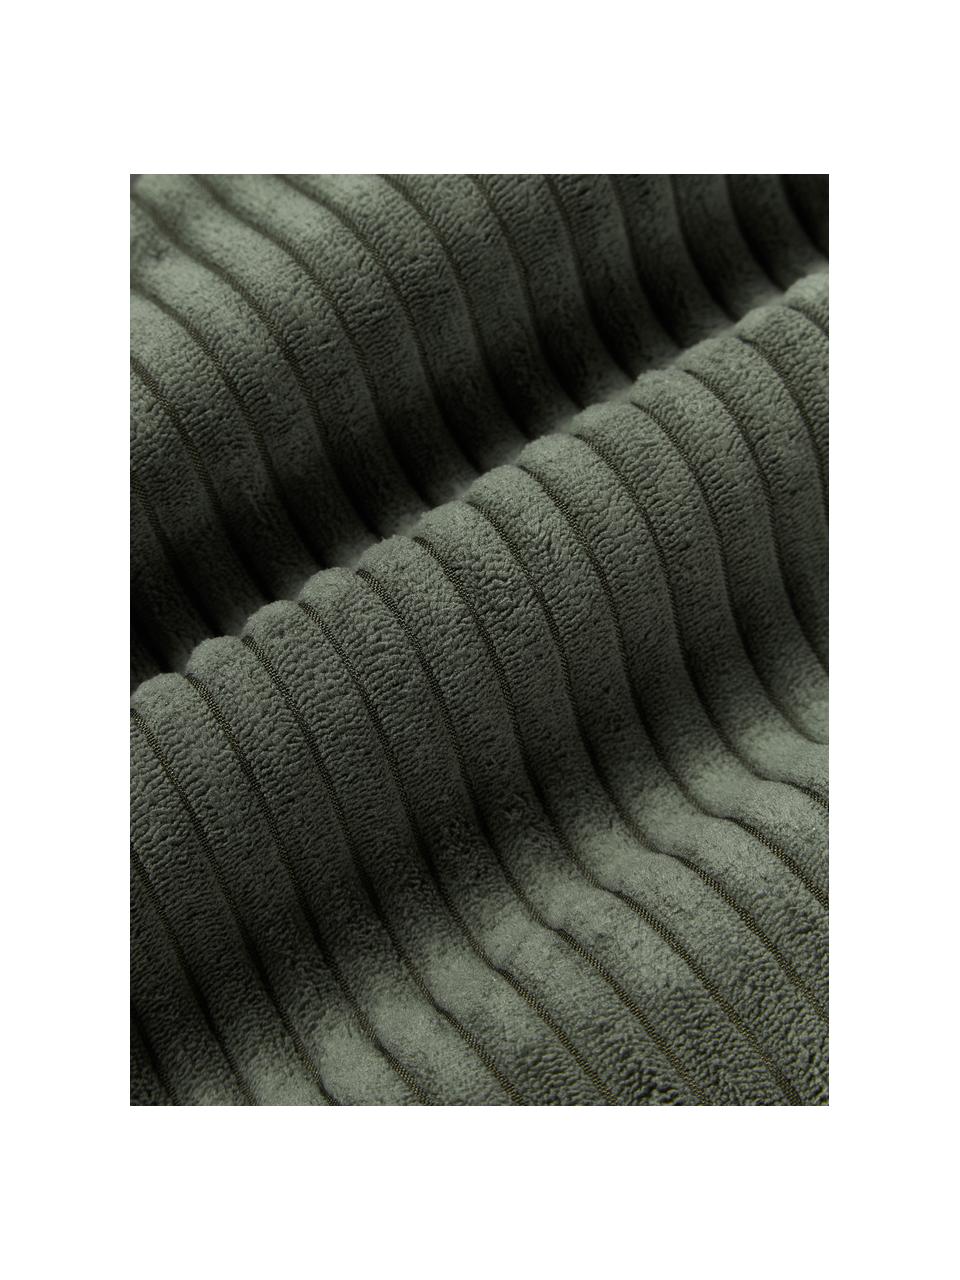 XL-Kissen Kylen aus Cord, Hülle: Cord (90 % Polyester, 10 , Olivgrün, B 30 x L 115 cm